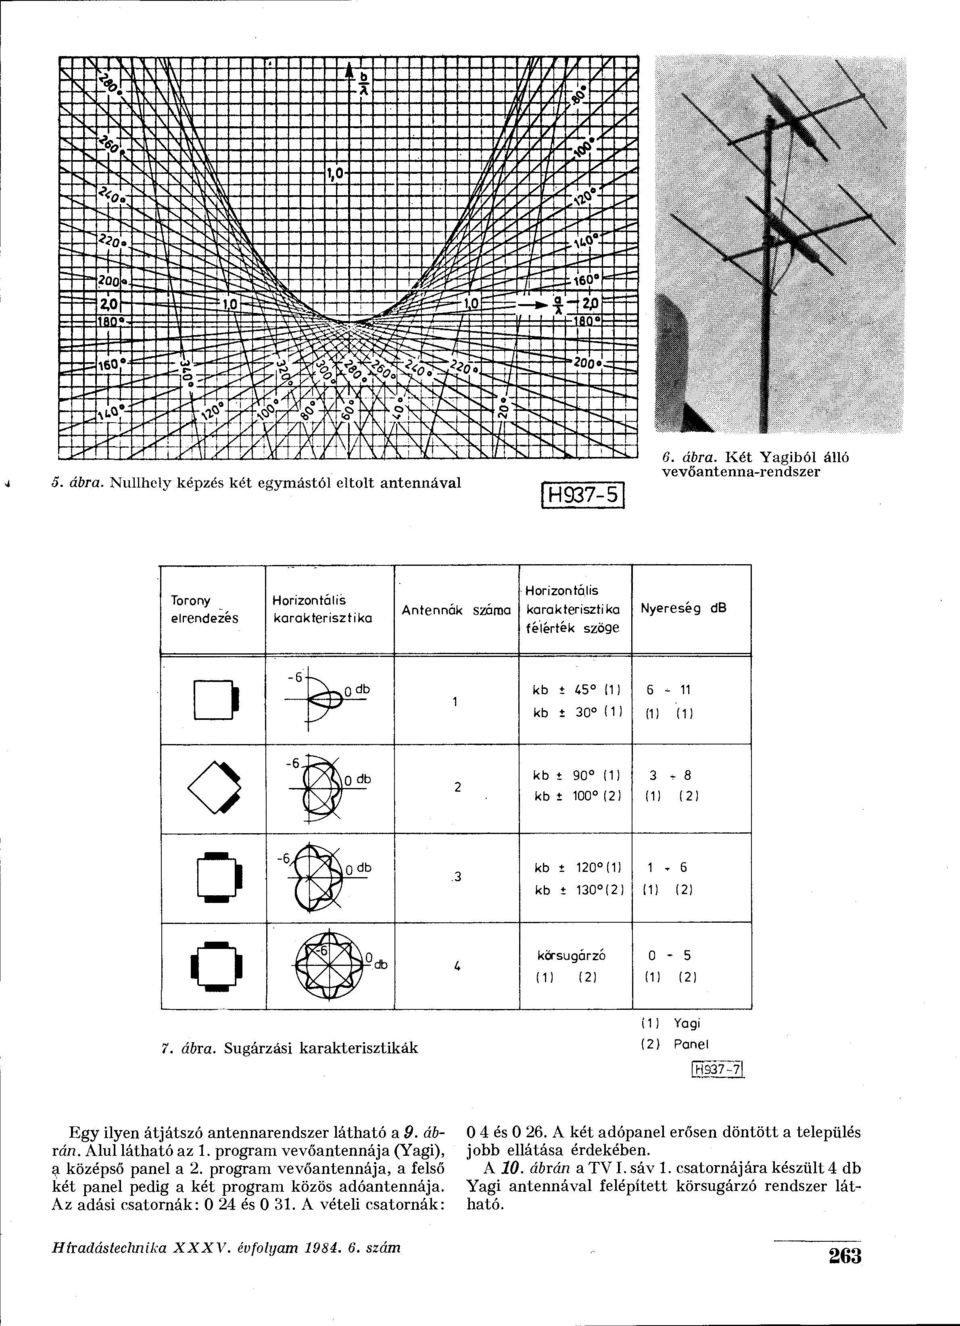 Sugárzási karakterisztikák Panel [H937-71 Egy ilyen átjátszó antennarendszer látható a 9. ábrán. Alul látható az 1. program vevőantennája (Yagi), a középső panel a 2.